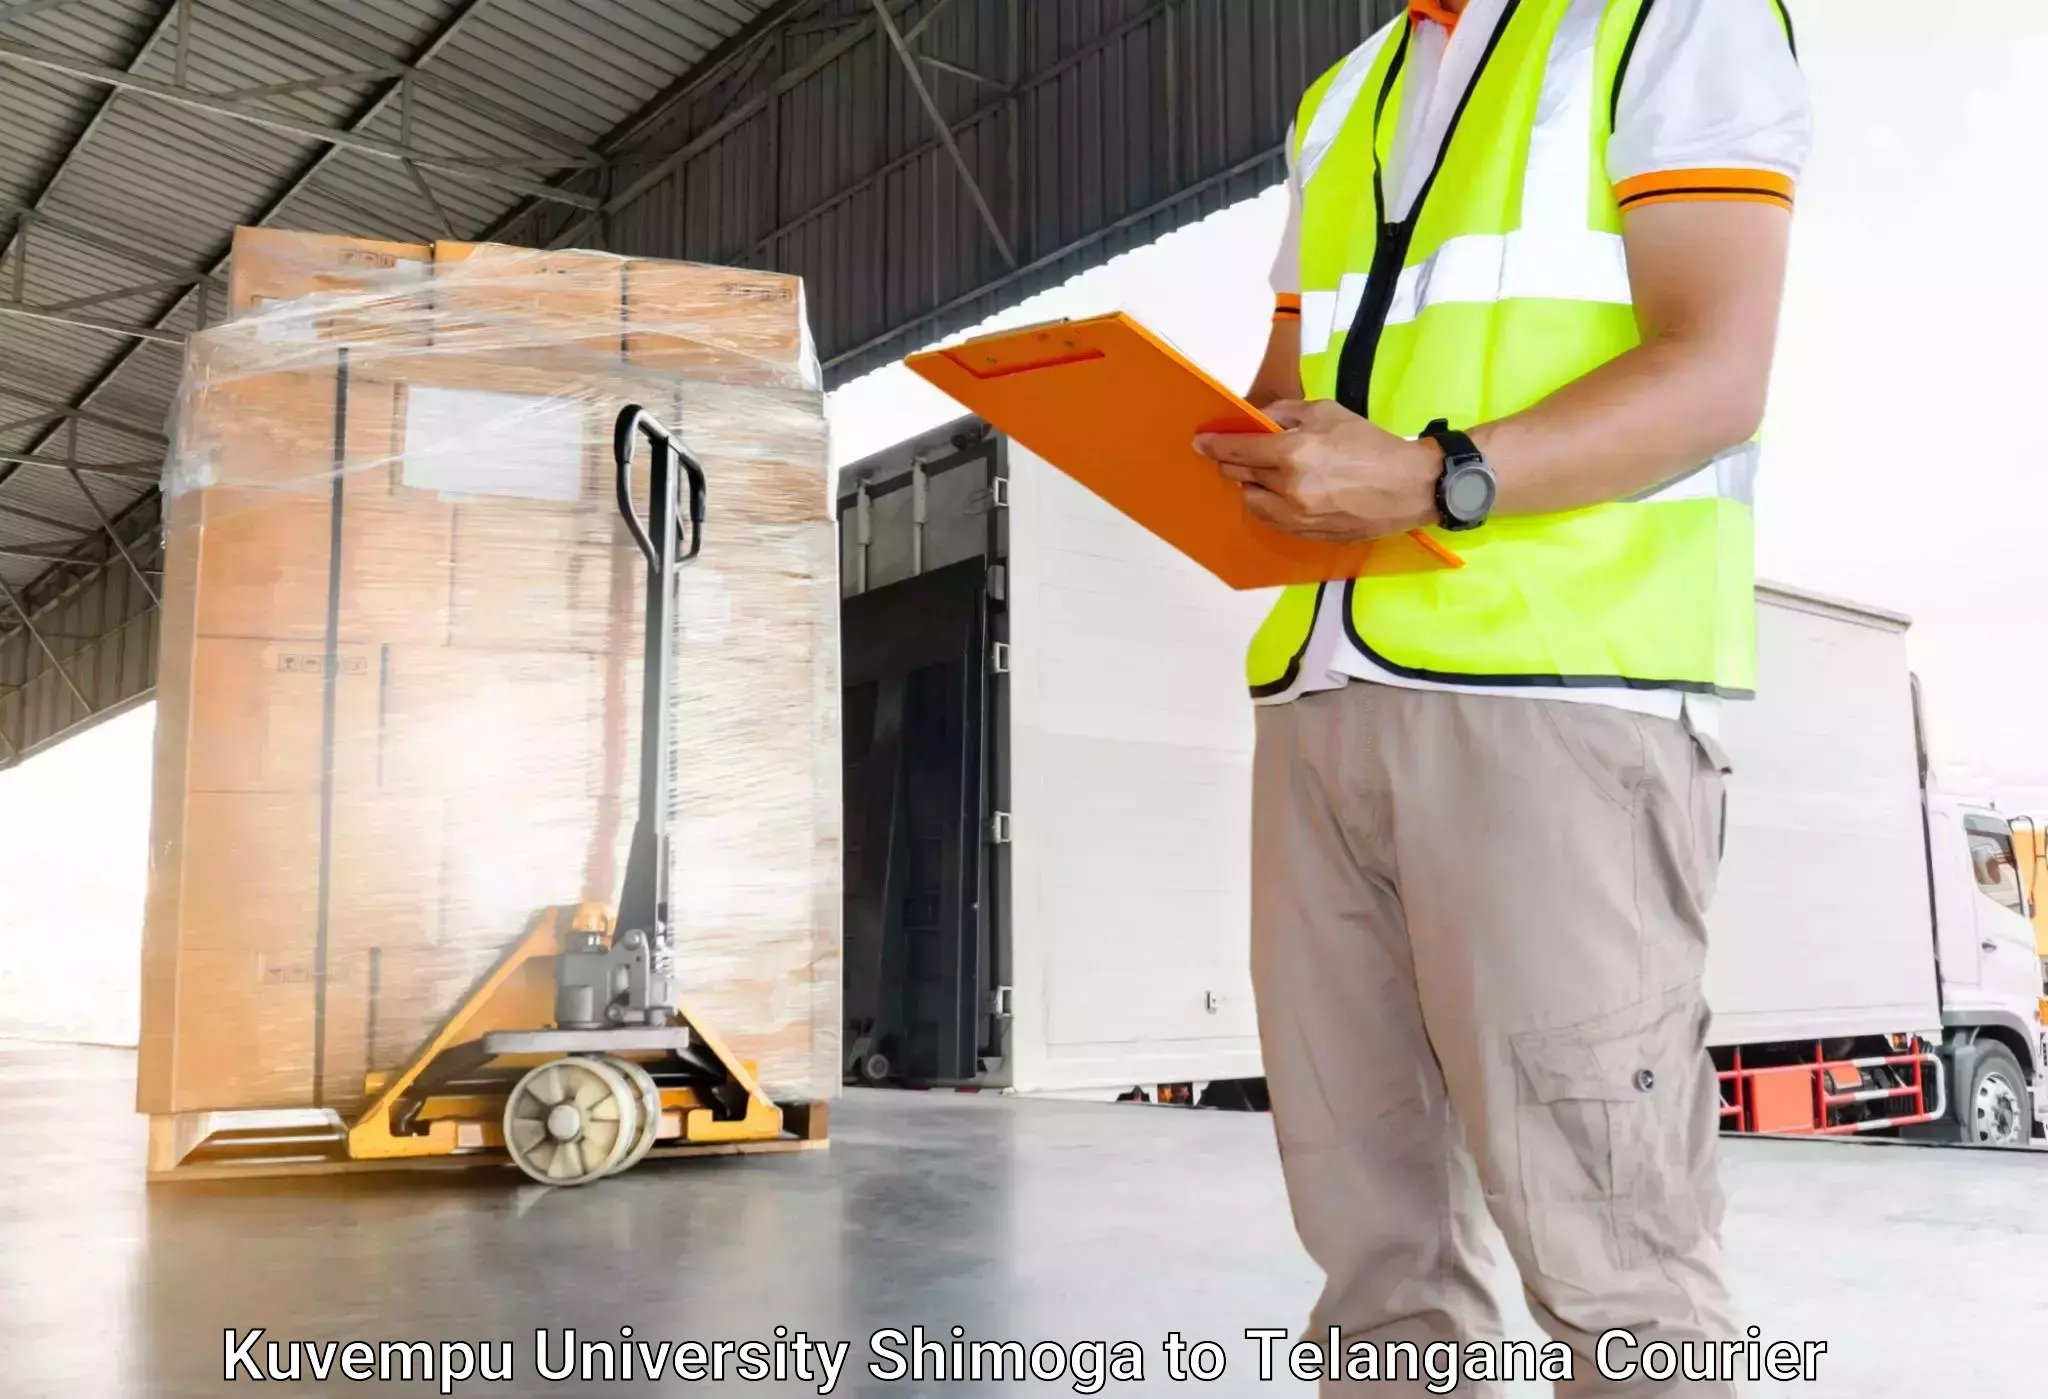 Efficient baggage courier system Kuvempu University Shimoga to Madhavaram